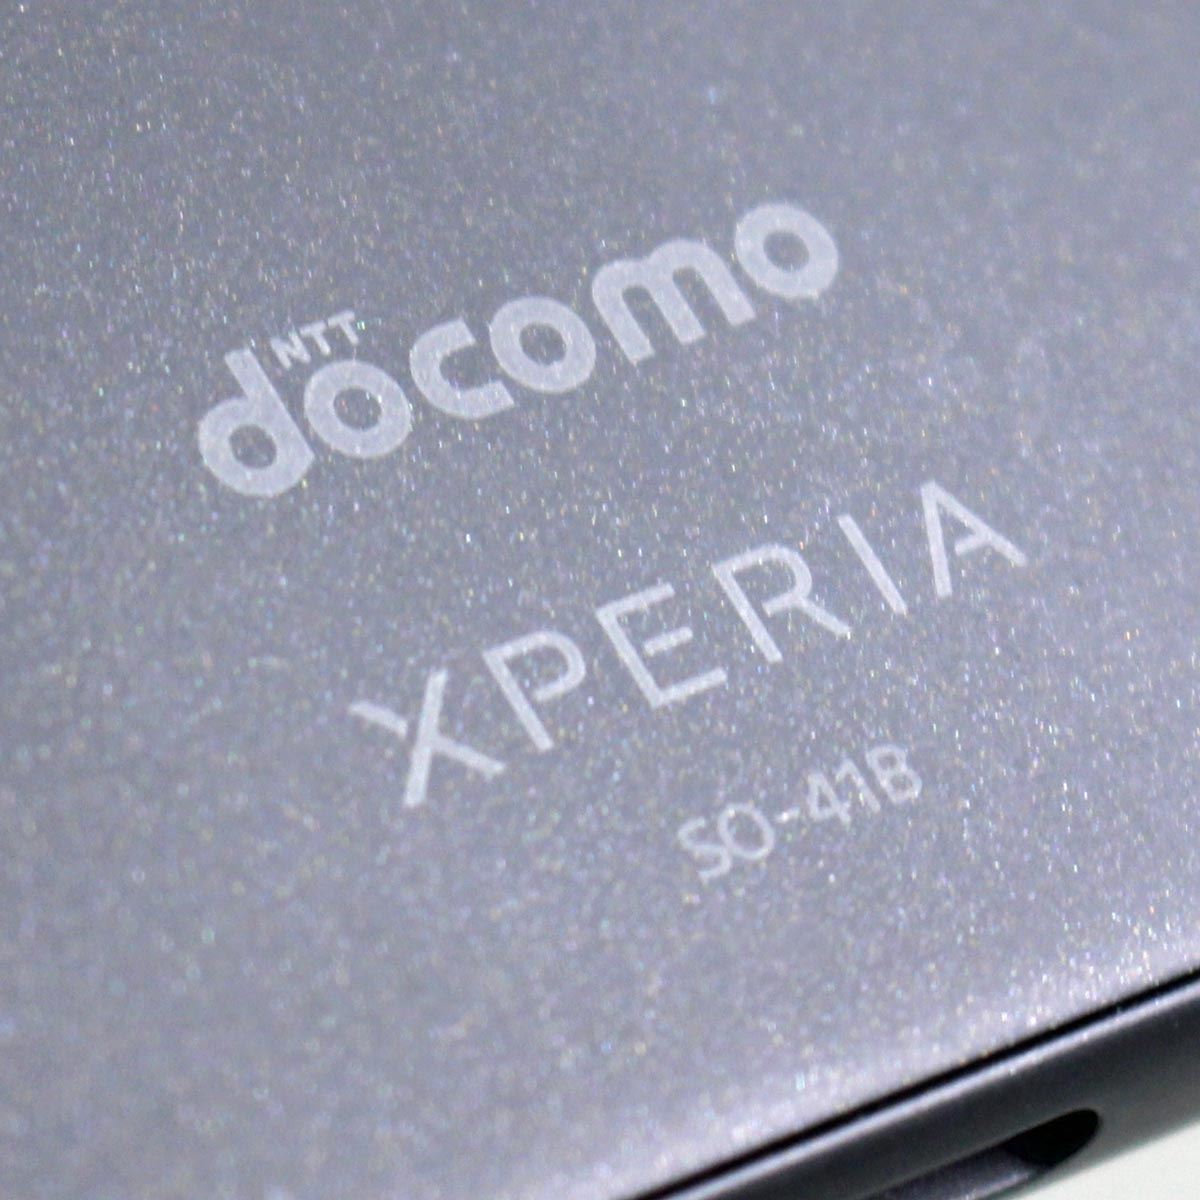 ユーザー評価が分かれるXperiaの異色エントリー機、ソニー「Xperia Ace 